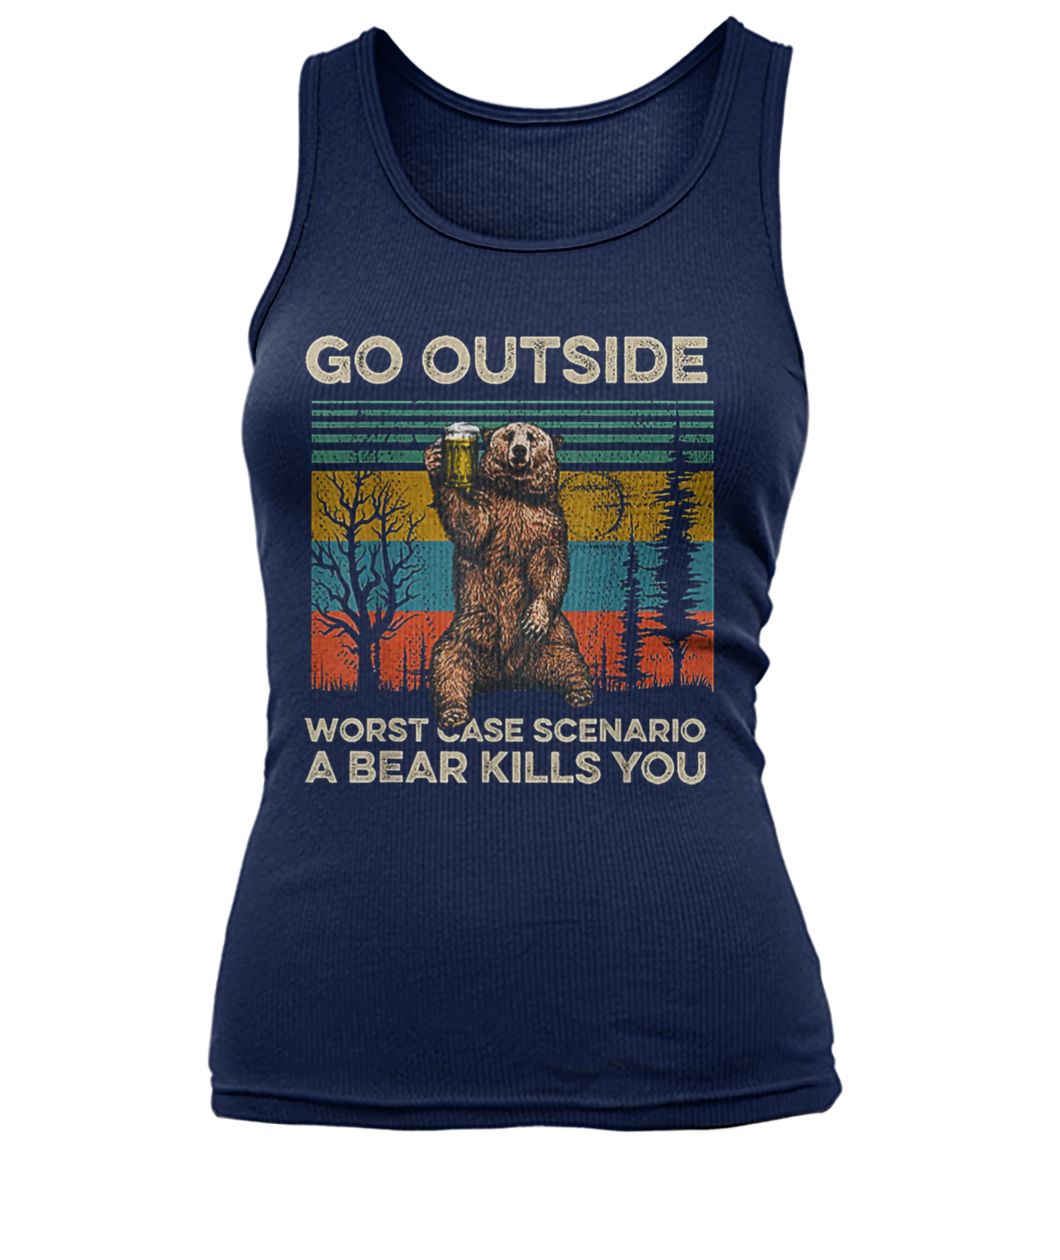 Vintage go outside worst case scenario a bear kills you women's tank top